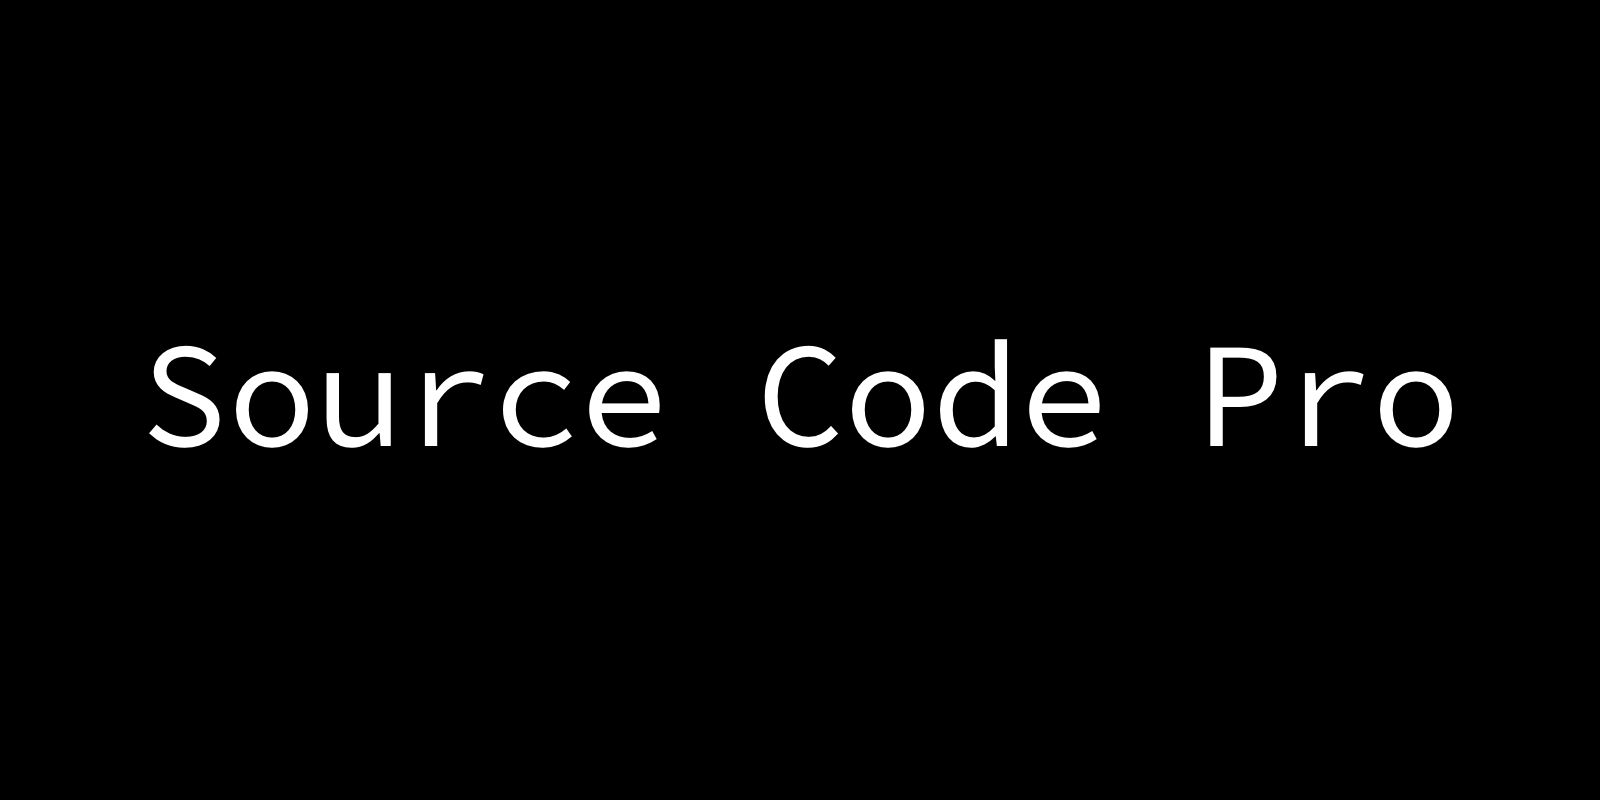 Source Code Pro by Paul D. Hunt